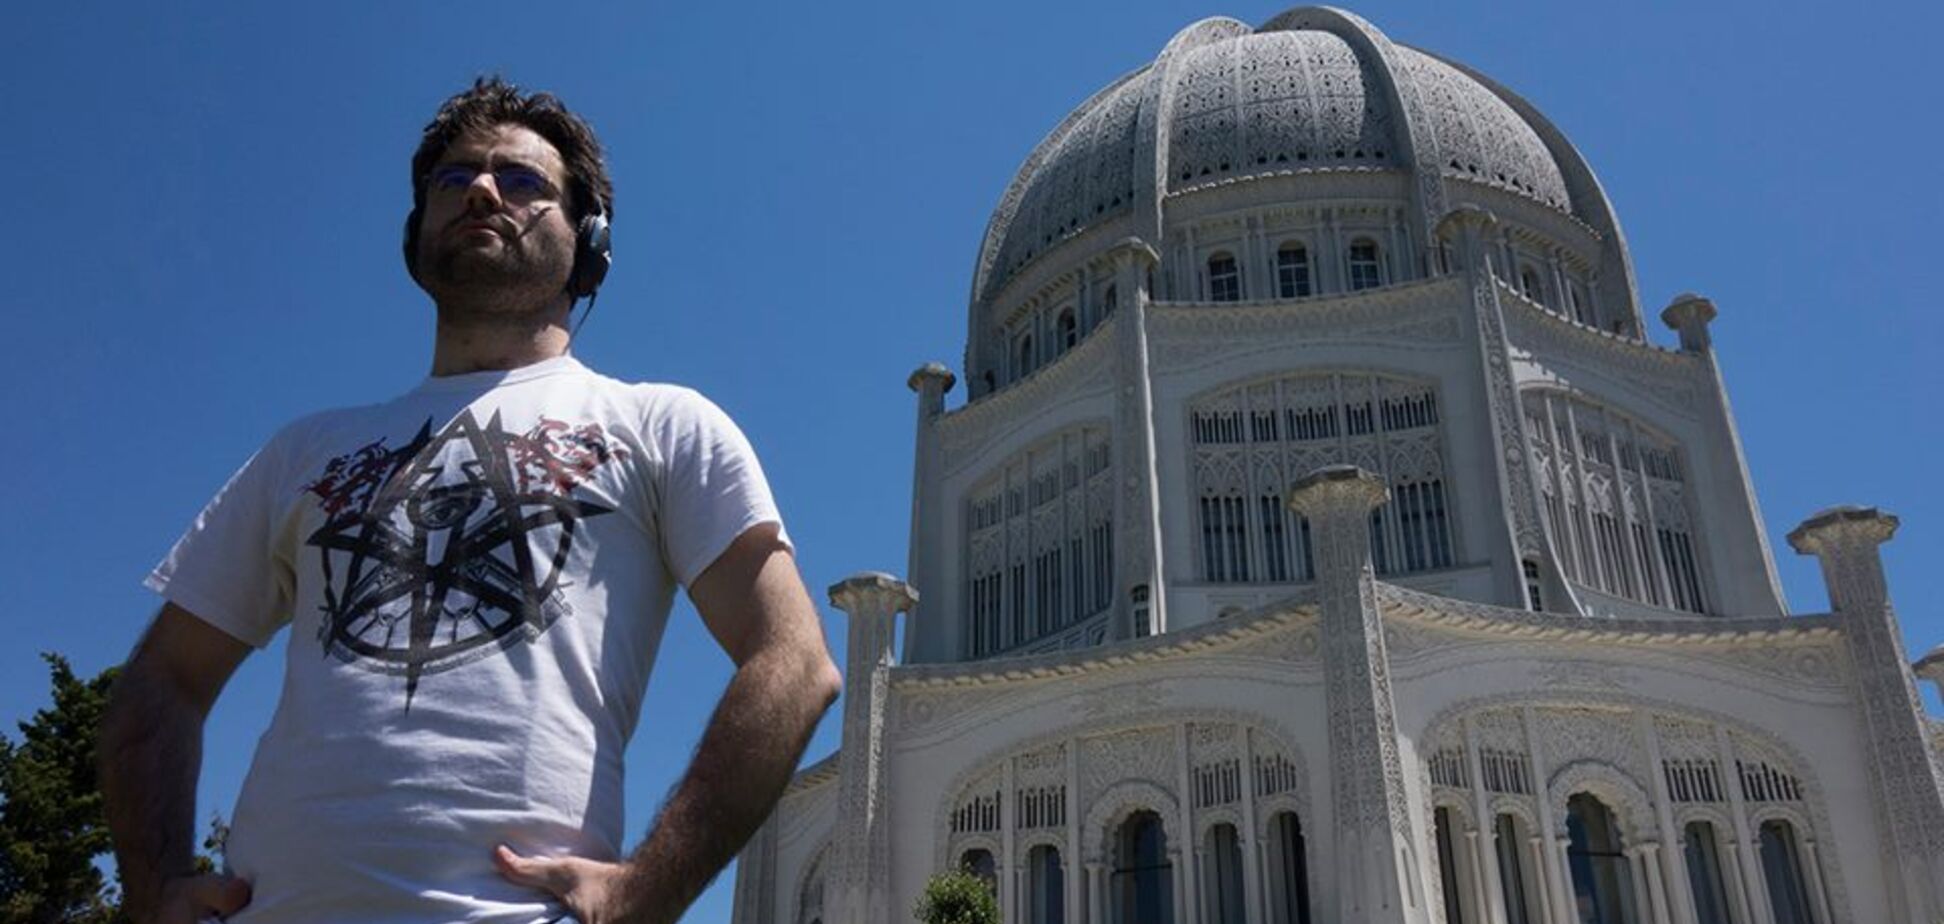 Свастика соседствует с распятием: турист показал удивительный храм в Чикаго. Фото